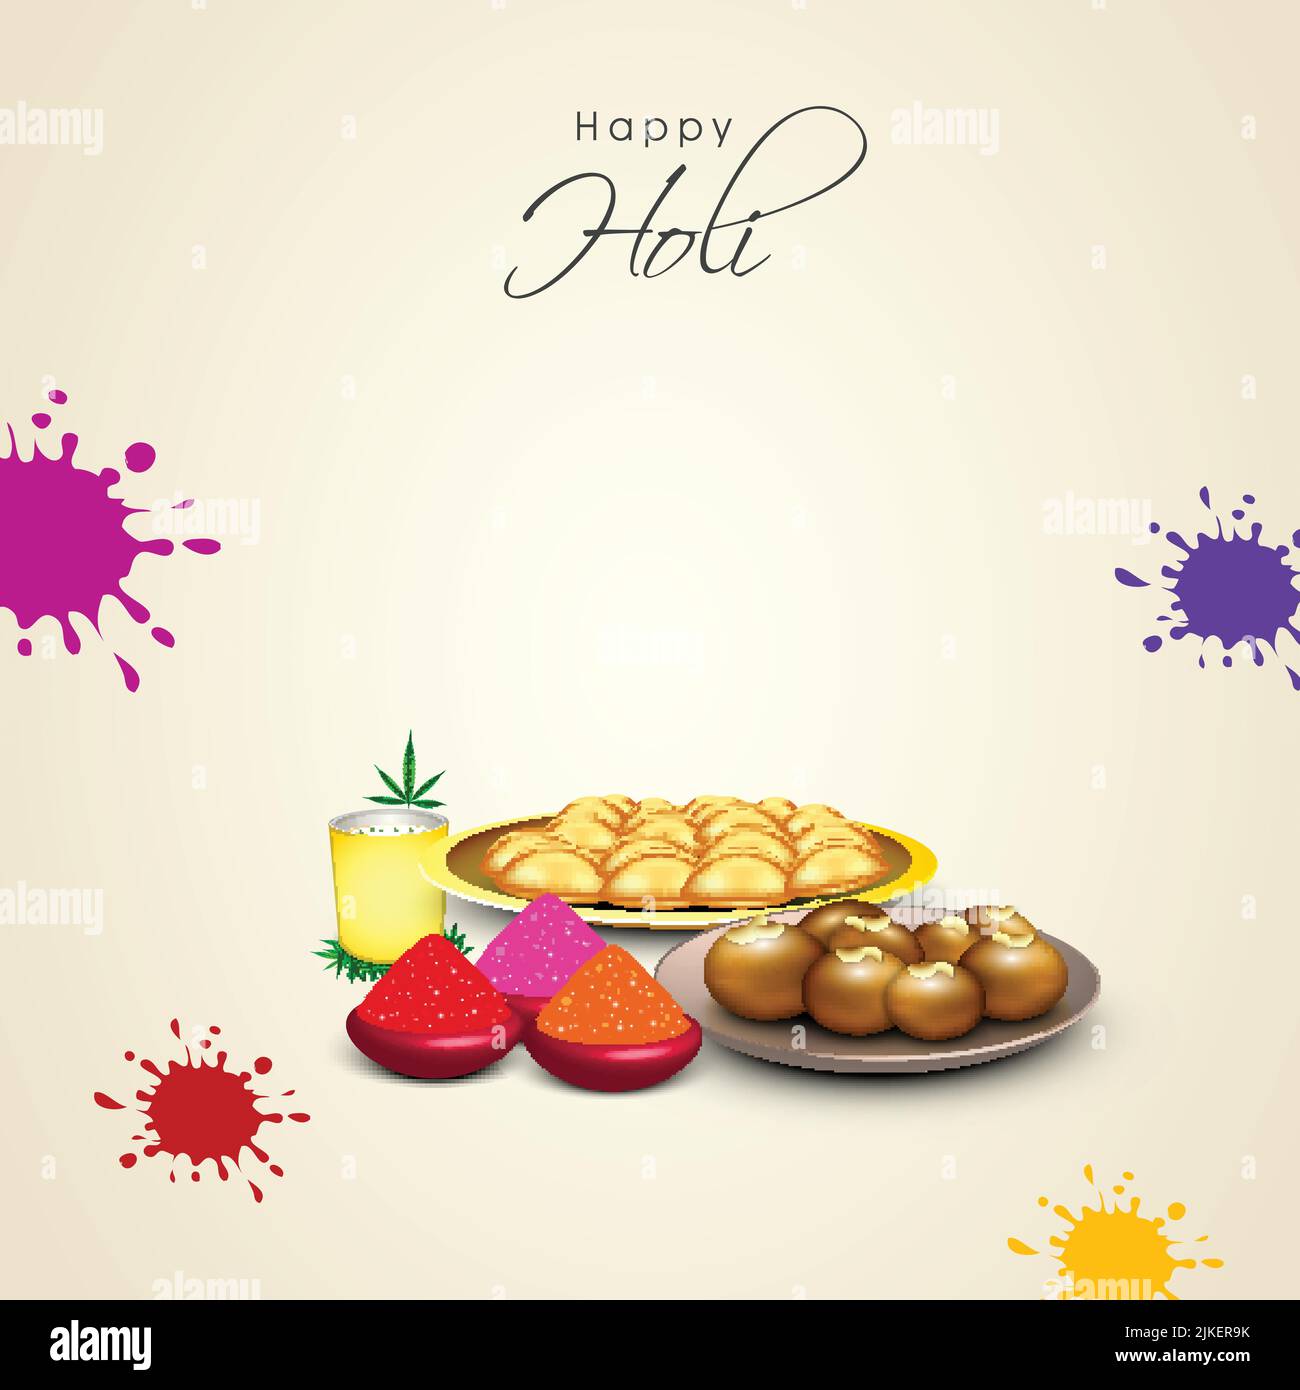 Happy Holi Celebration Concept con 3D Dolce indiane, Thandai Glass, foglie di Cannabis, Dry Color (Gulal) in ciotole ed effetto splatter su Beige Backgroun Illustrazione Vettoriale